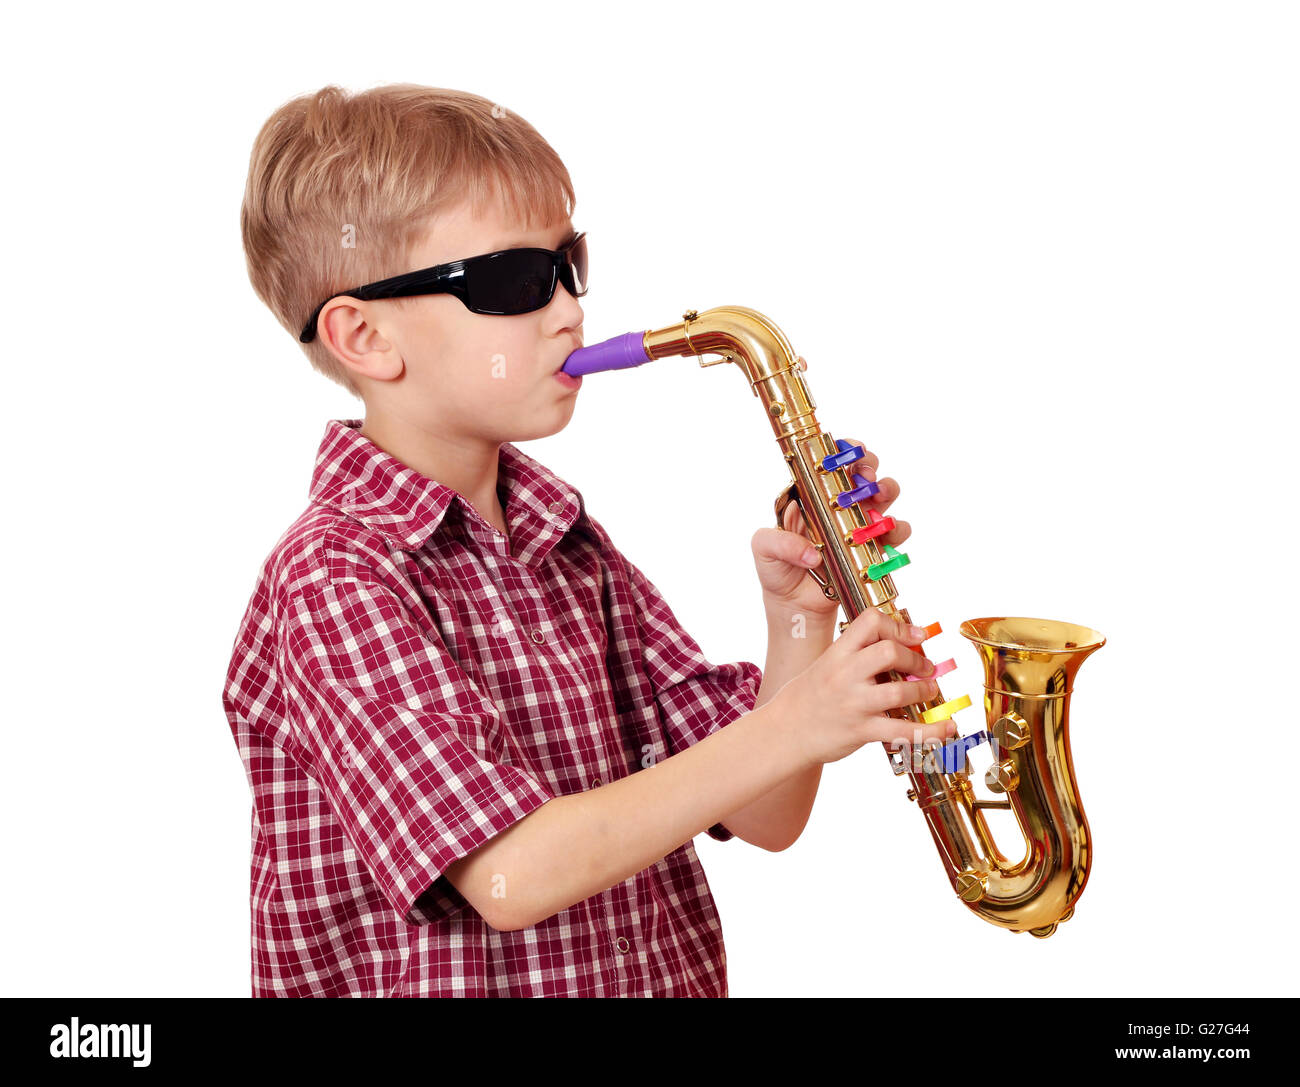 Little Boy Está Jugando Un Saxofón De Juguete En El Fondo Blanco Fotos,  retratos, imágenes y fotografía de archivo libres de derecho. Image 5434748